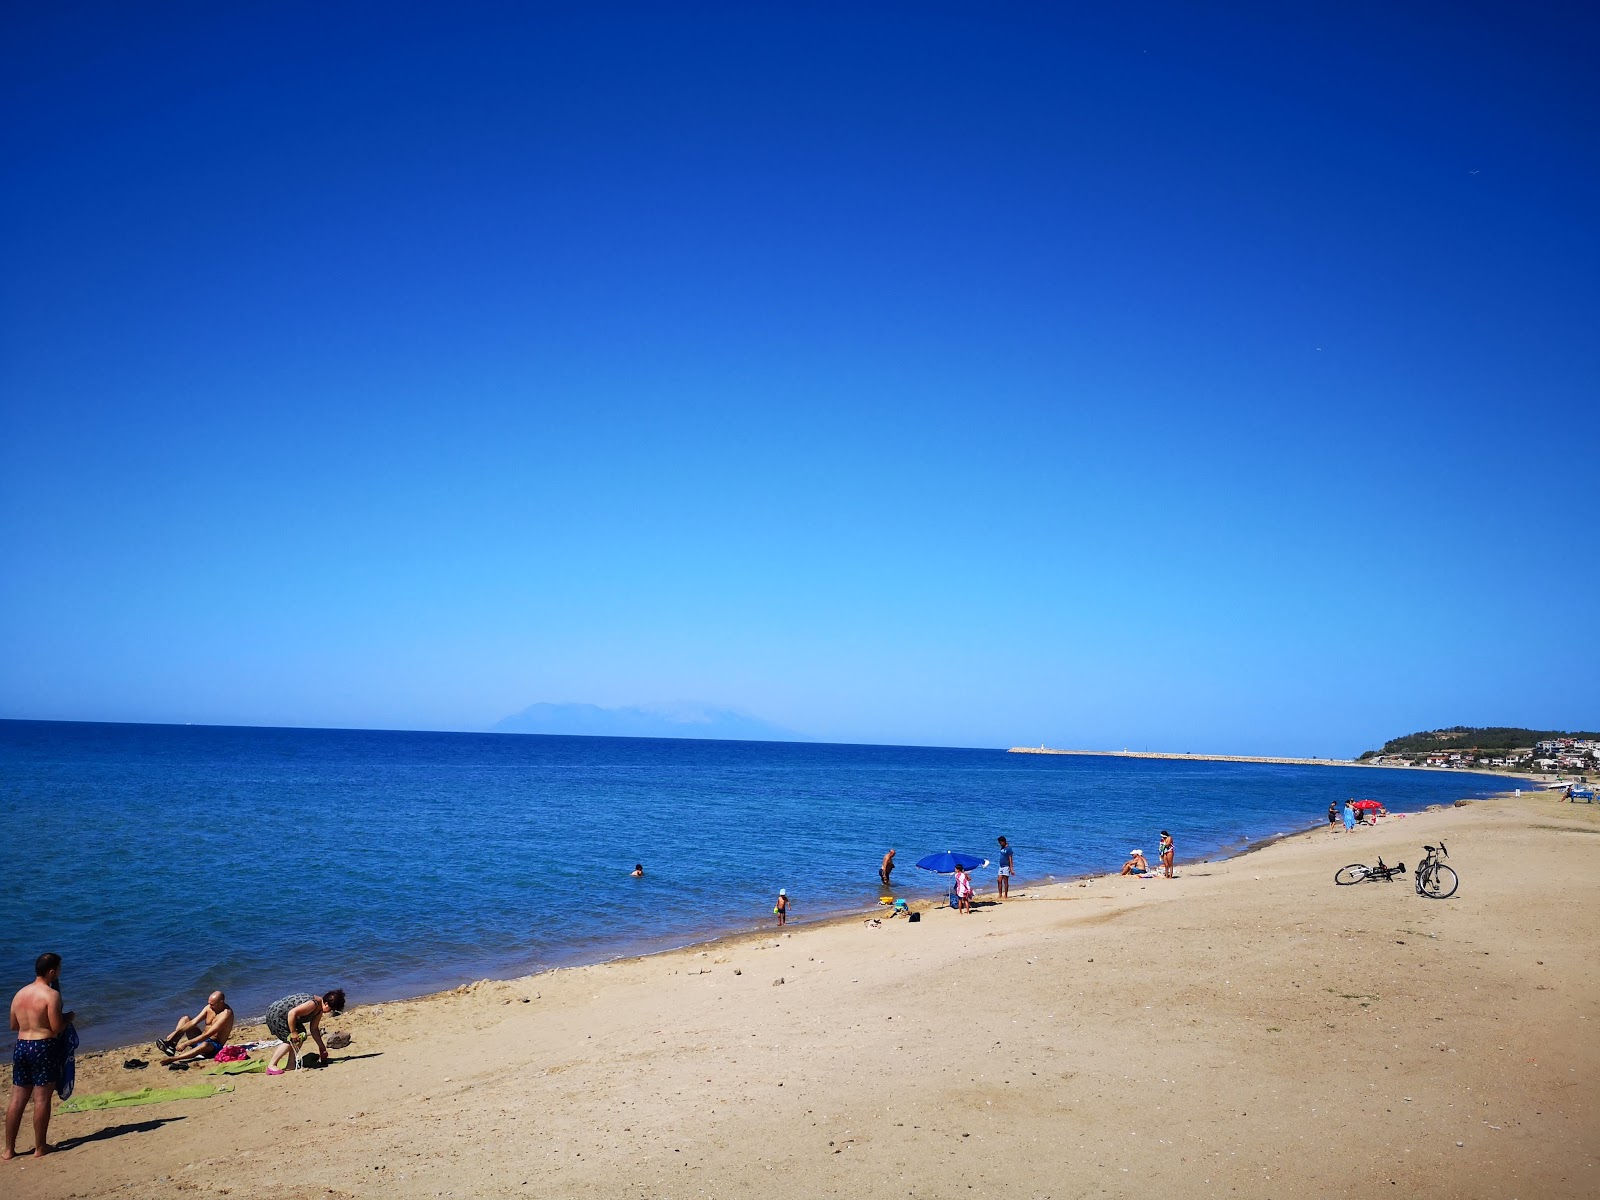 Foto von Gulcavus beach mit heller feiner sand Oberfläche